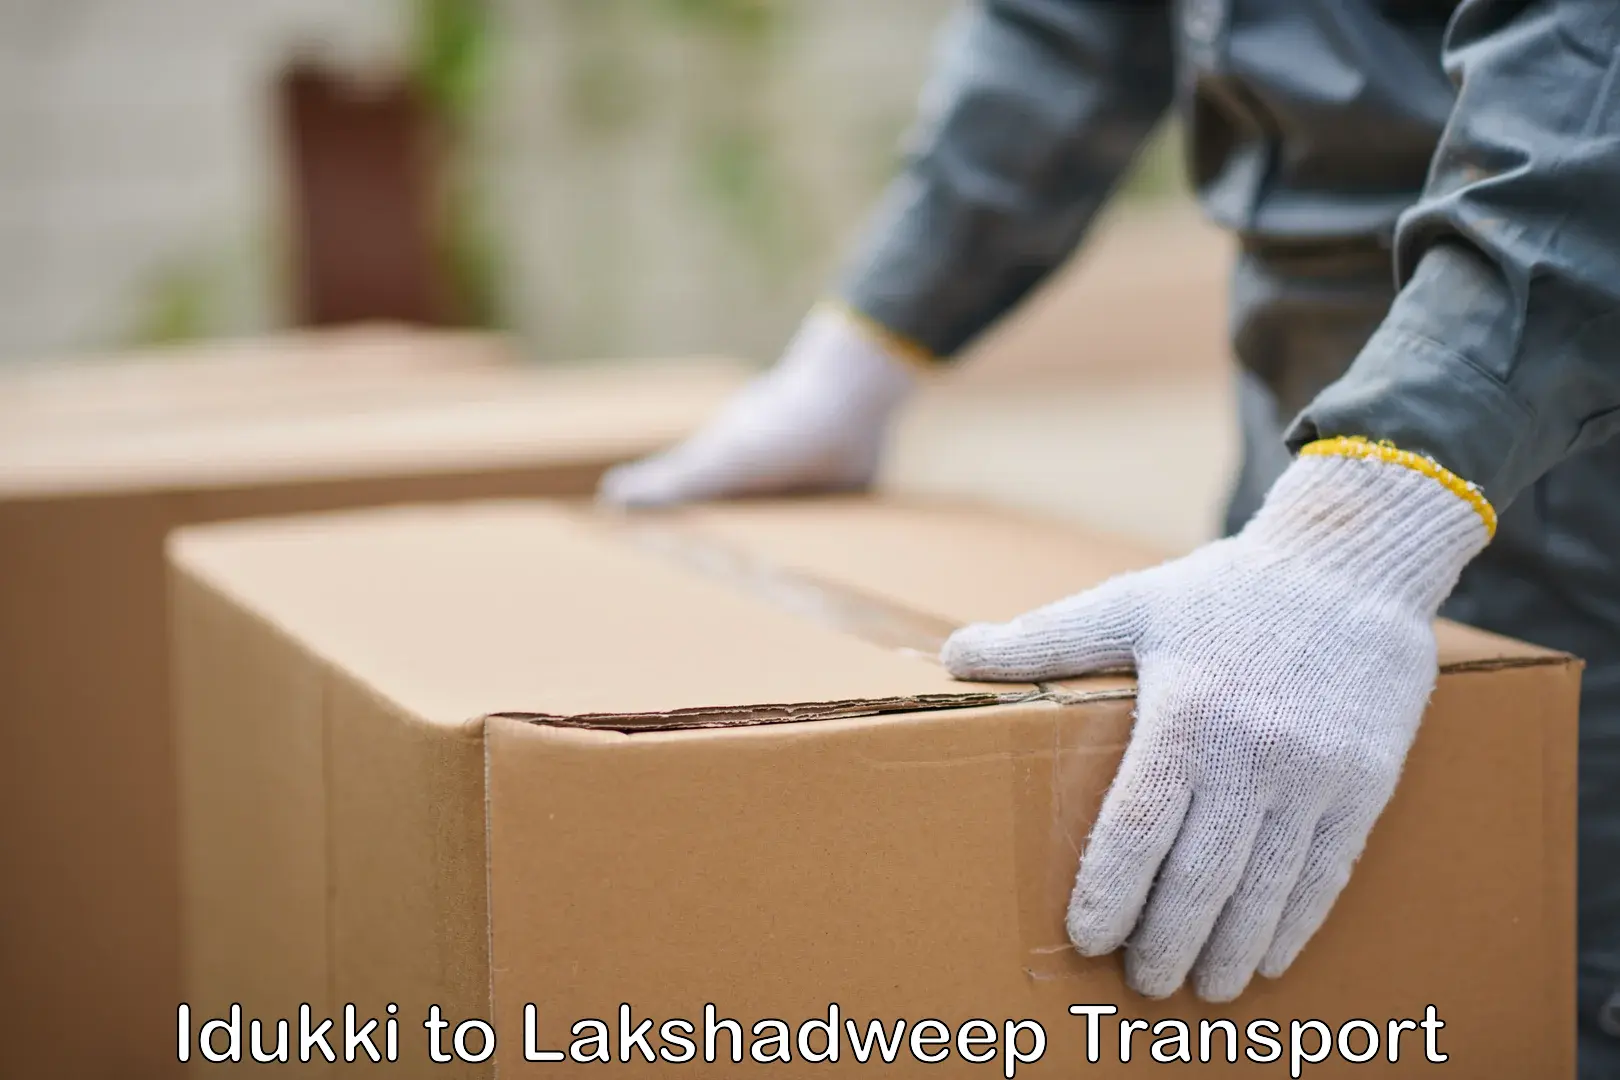 Furniture transport service Idukki to Lakshadweep